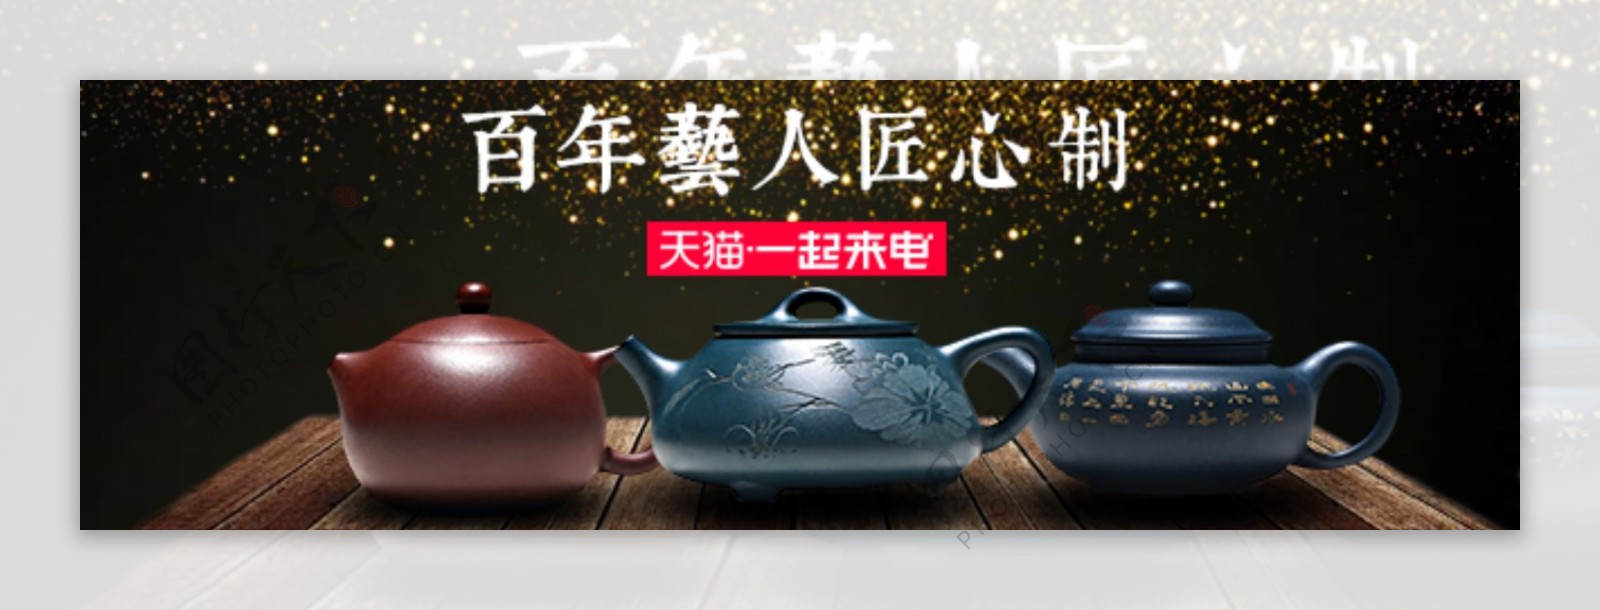 紫砂壶茶具淘宝海报